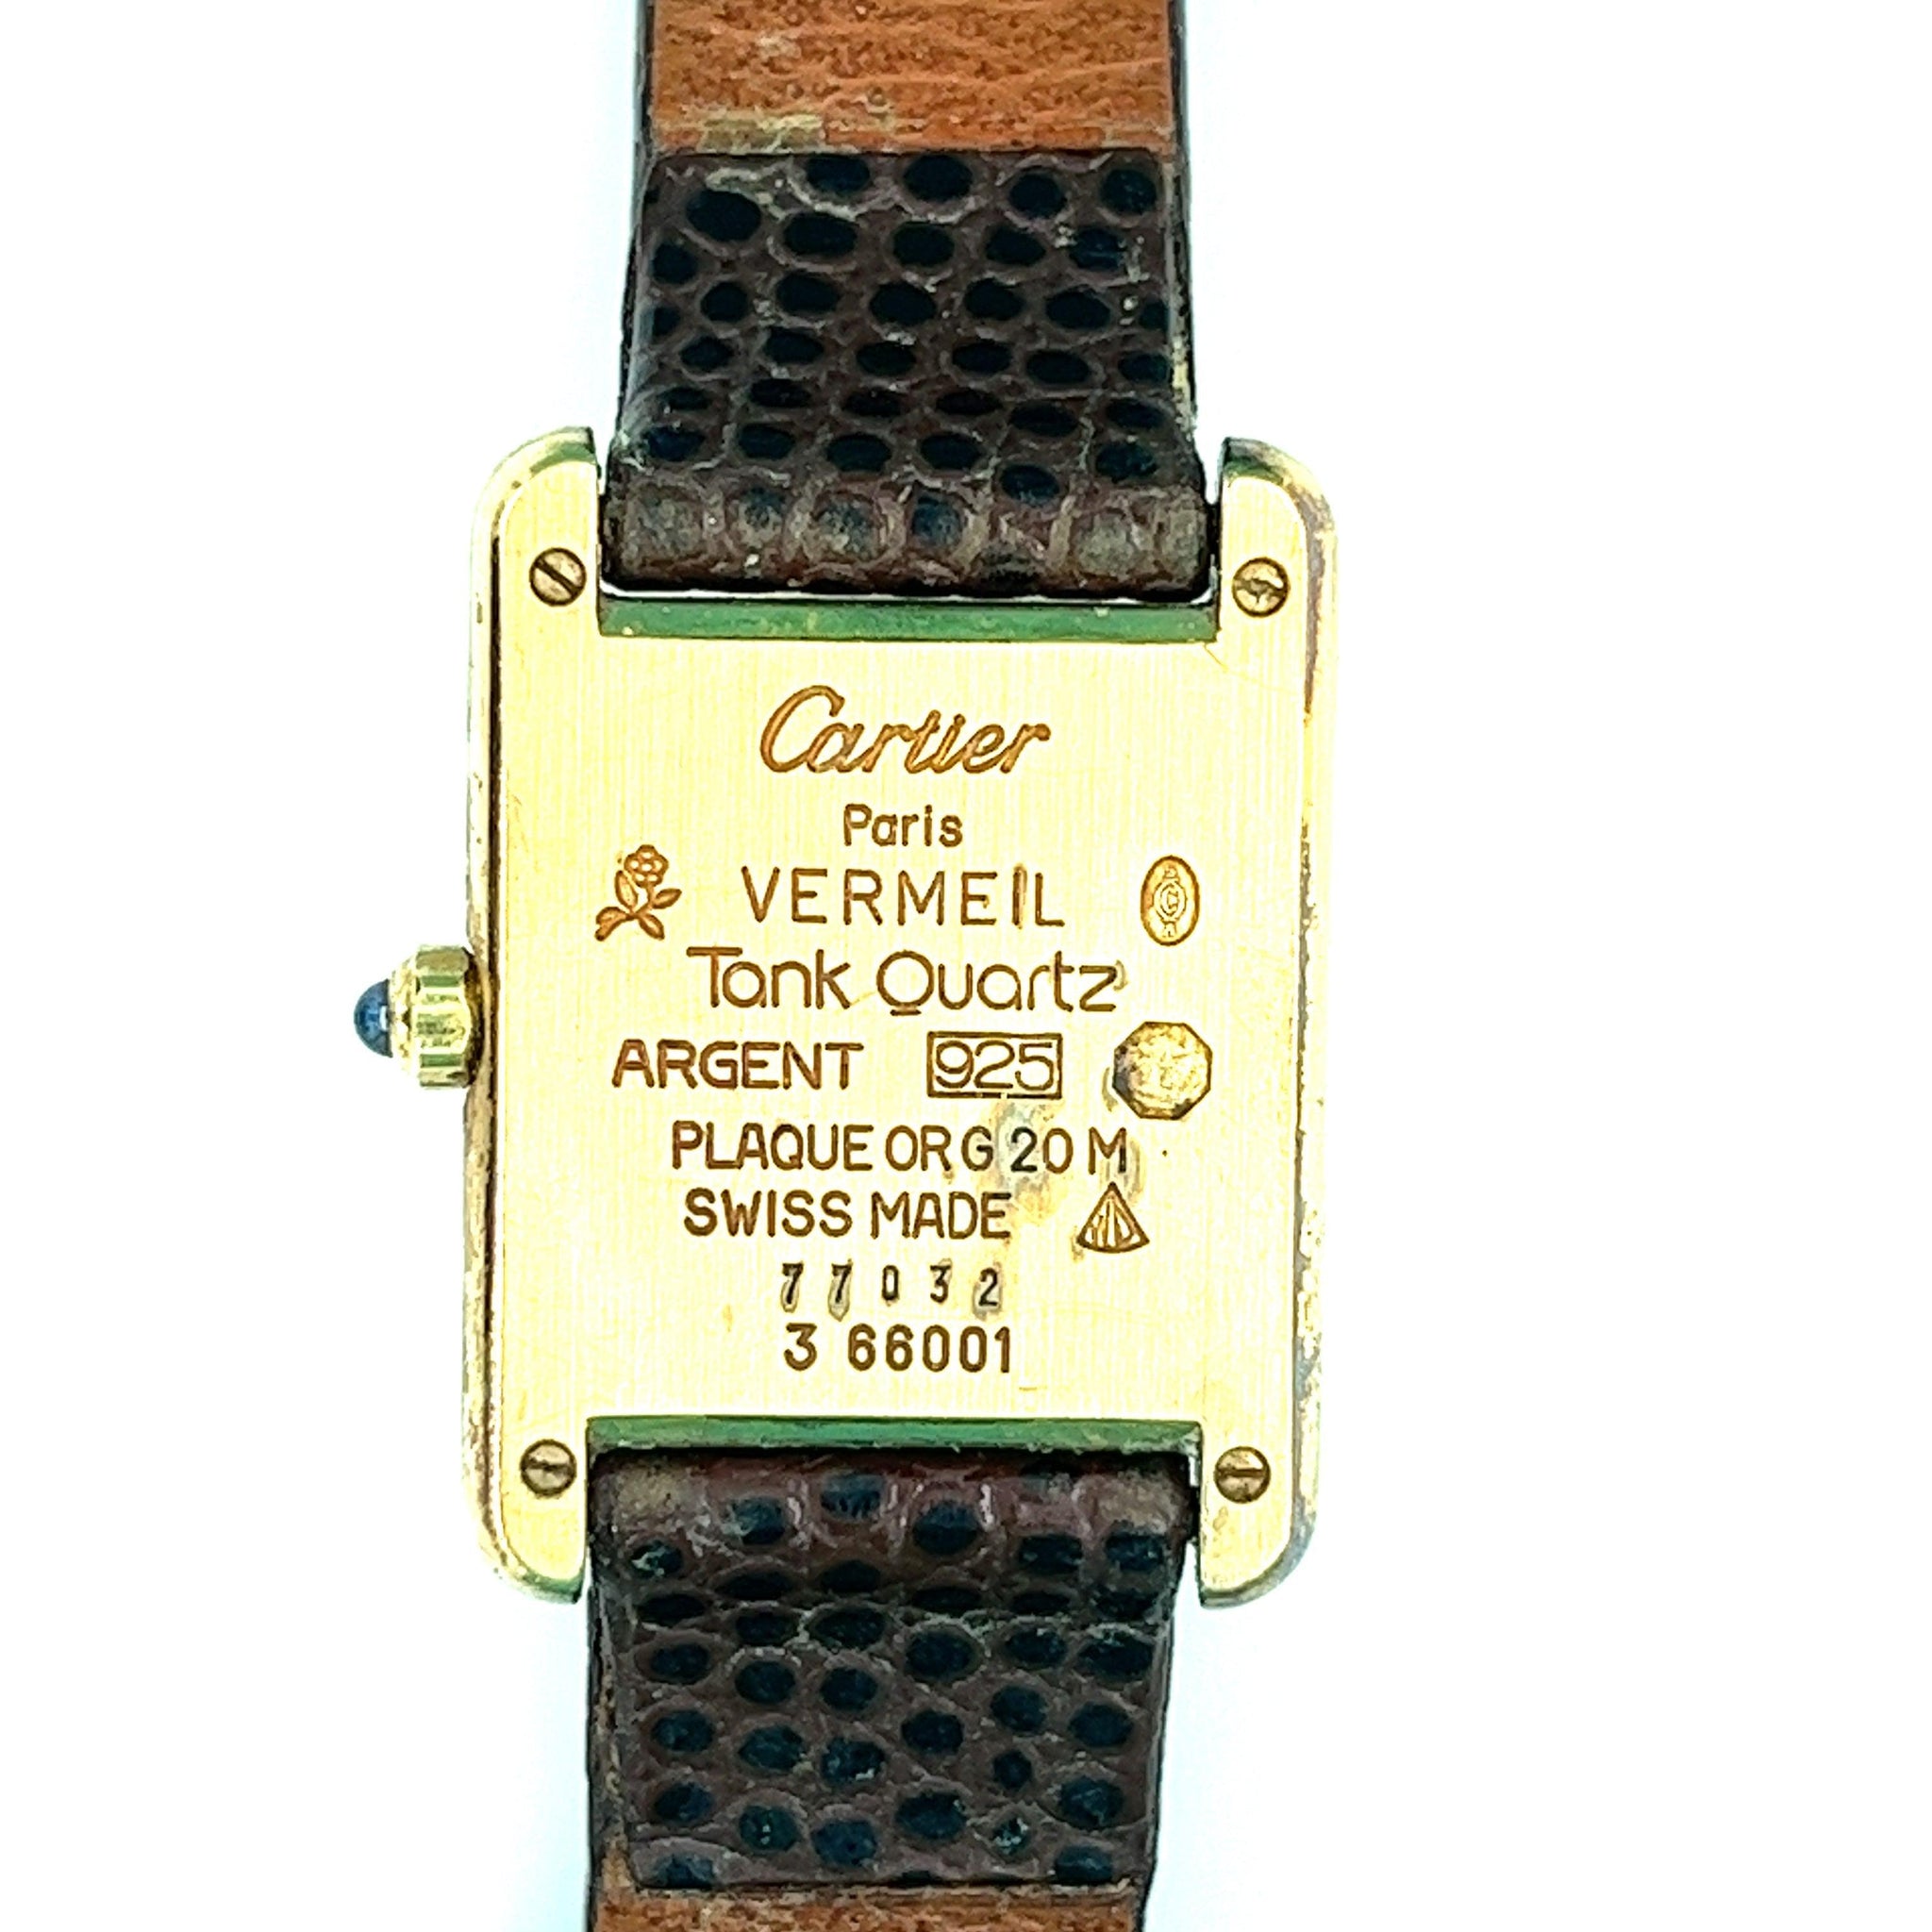 Cartier Vermeil Tank Quartz Argent 3 66001 with Leather Strap